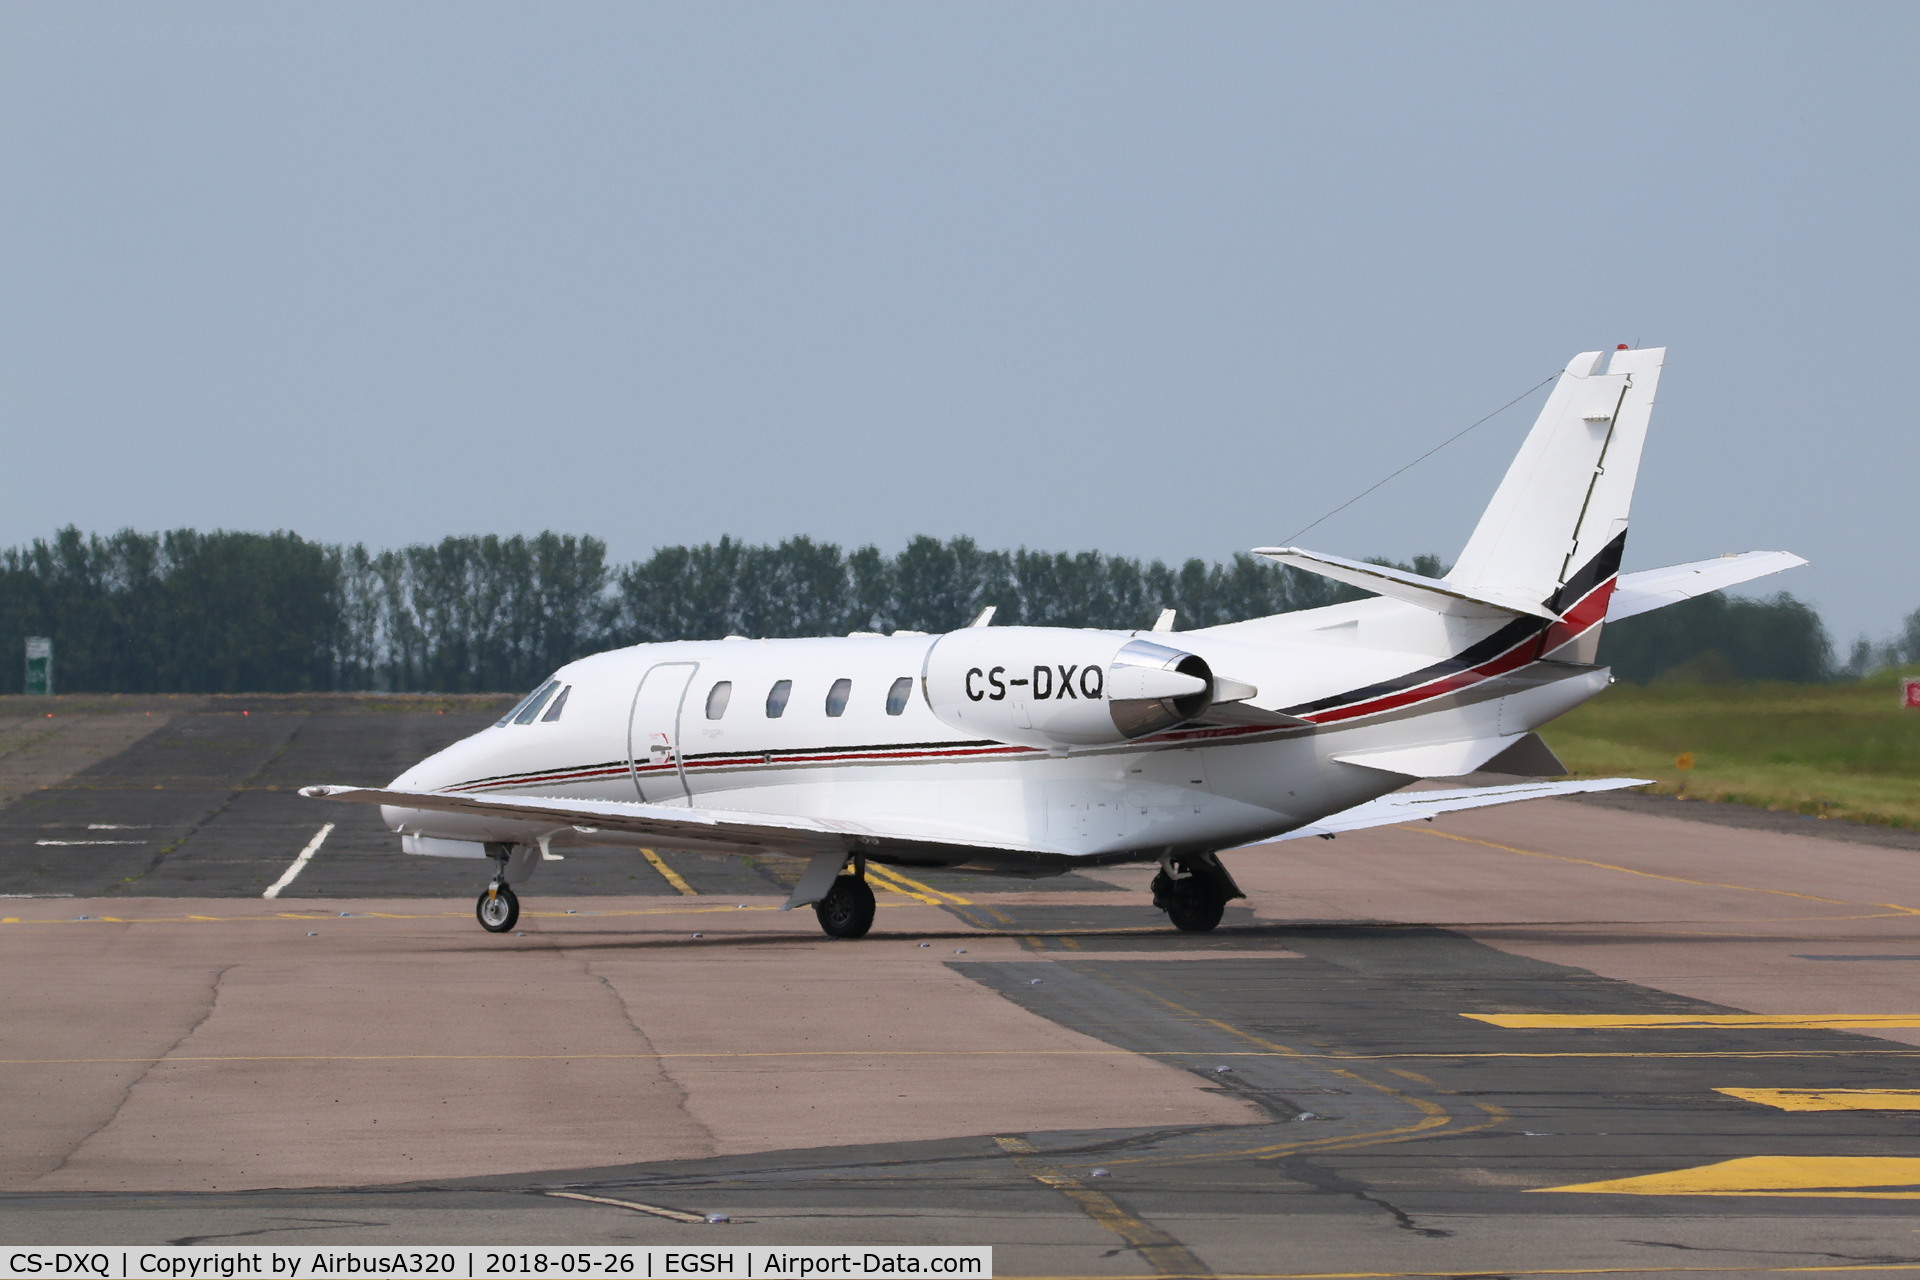 CS-DXQ, 2007 Cessna 560XL Citation XLS C/N 560-5704, Arriving at Norwich